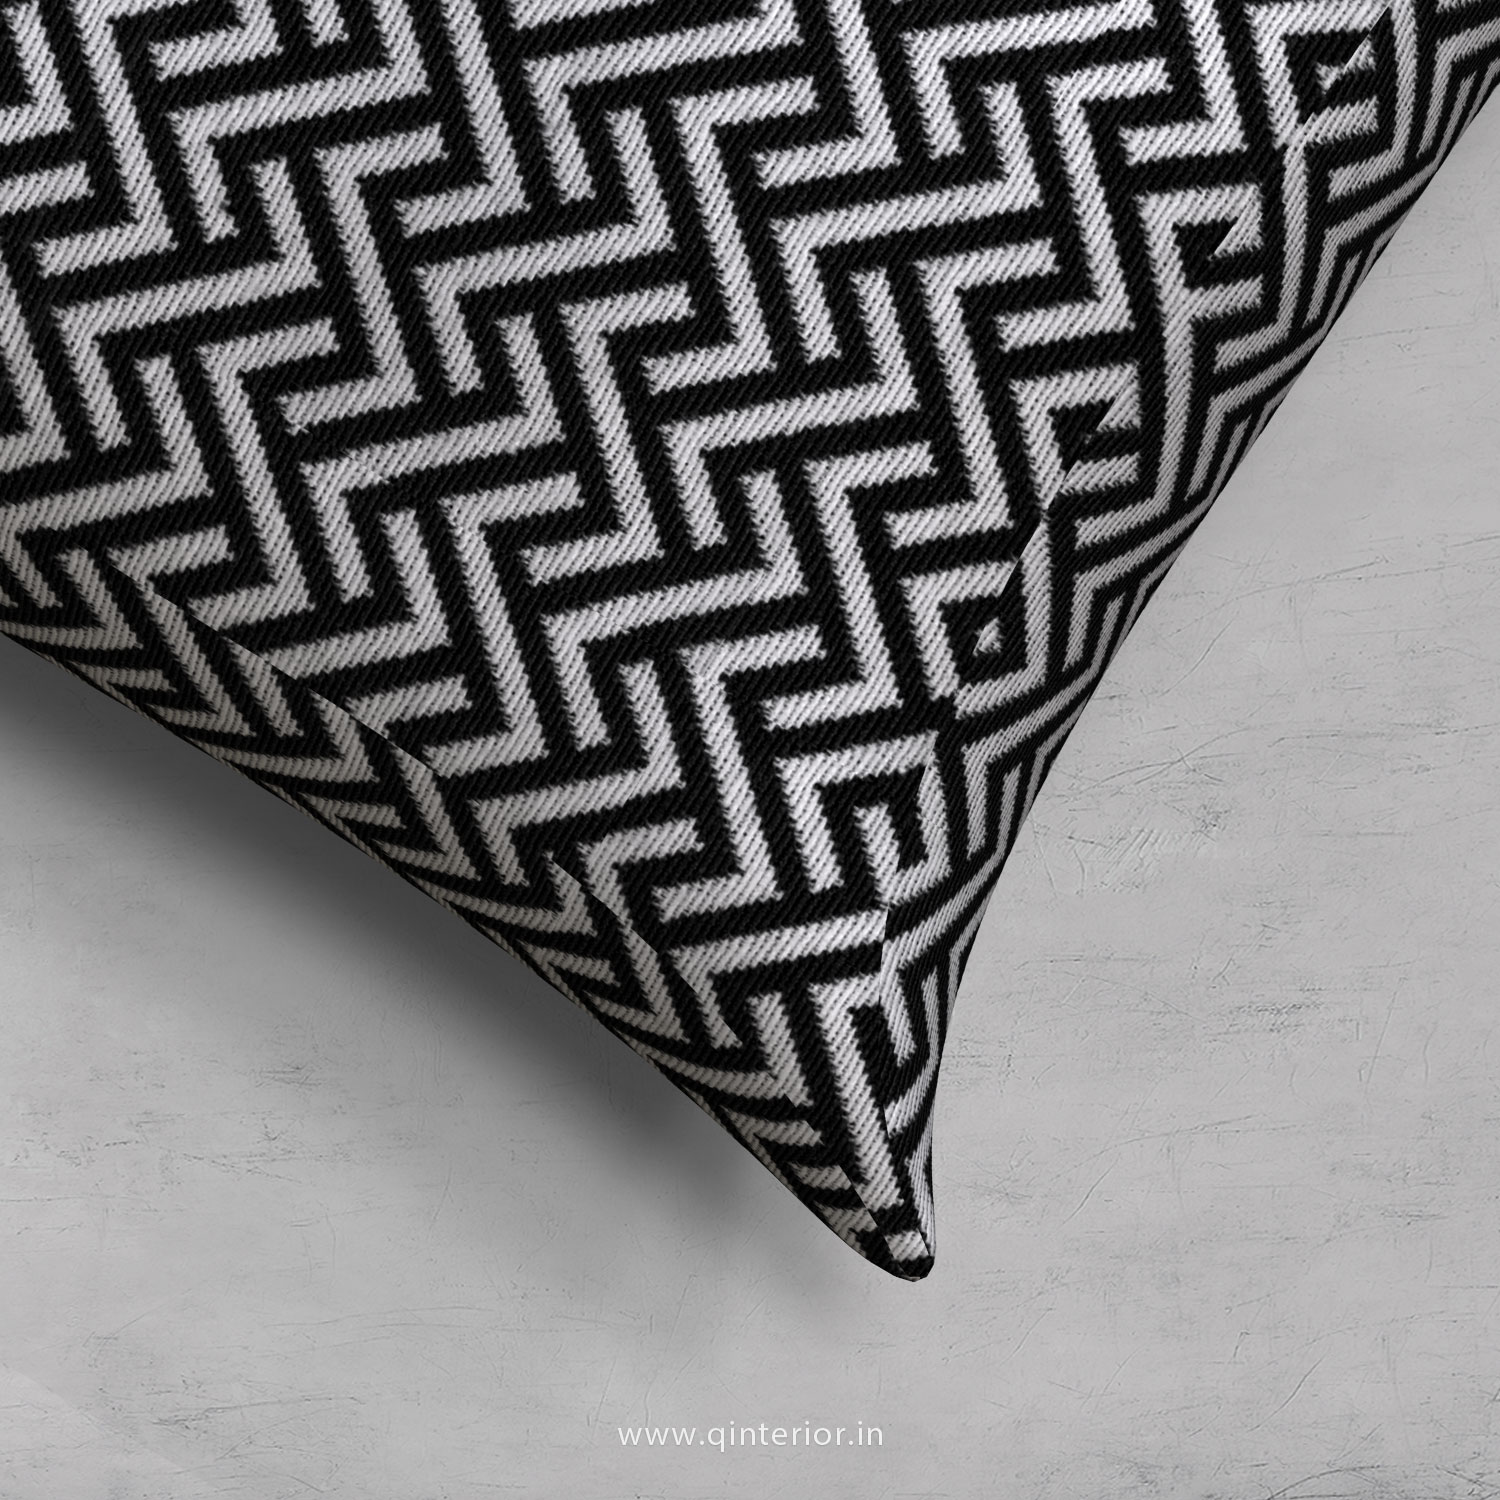 Cushion With Cushion Cover in Jacquard - CUS001 JQ15